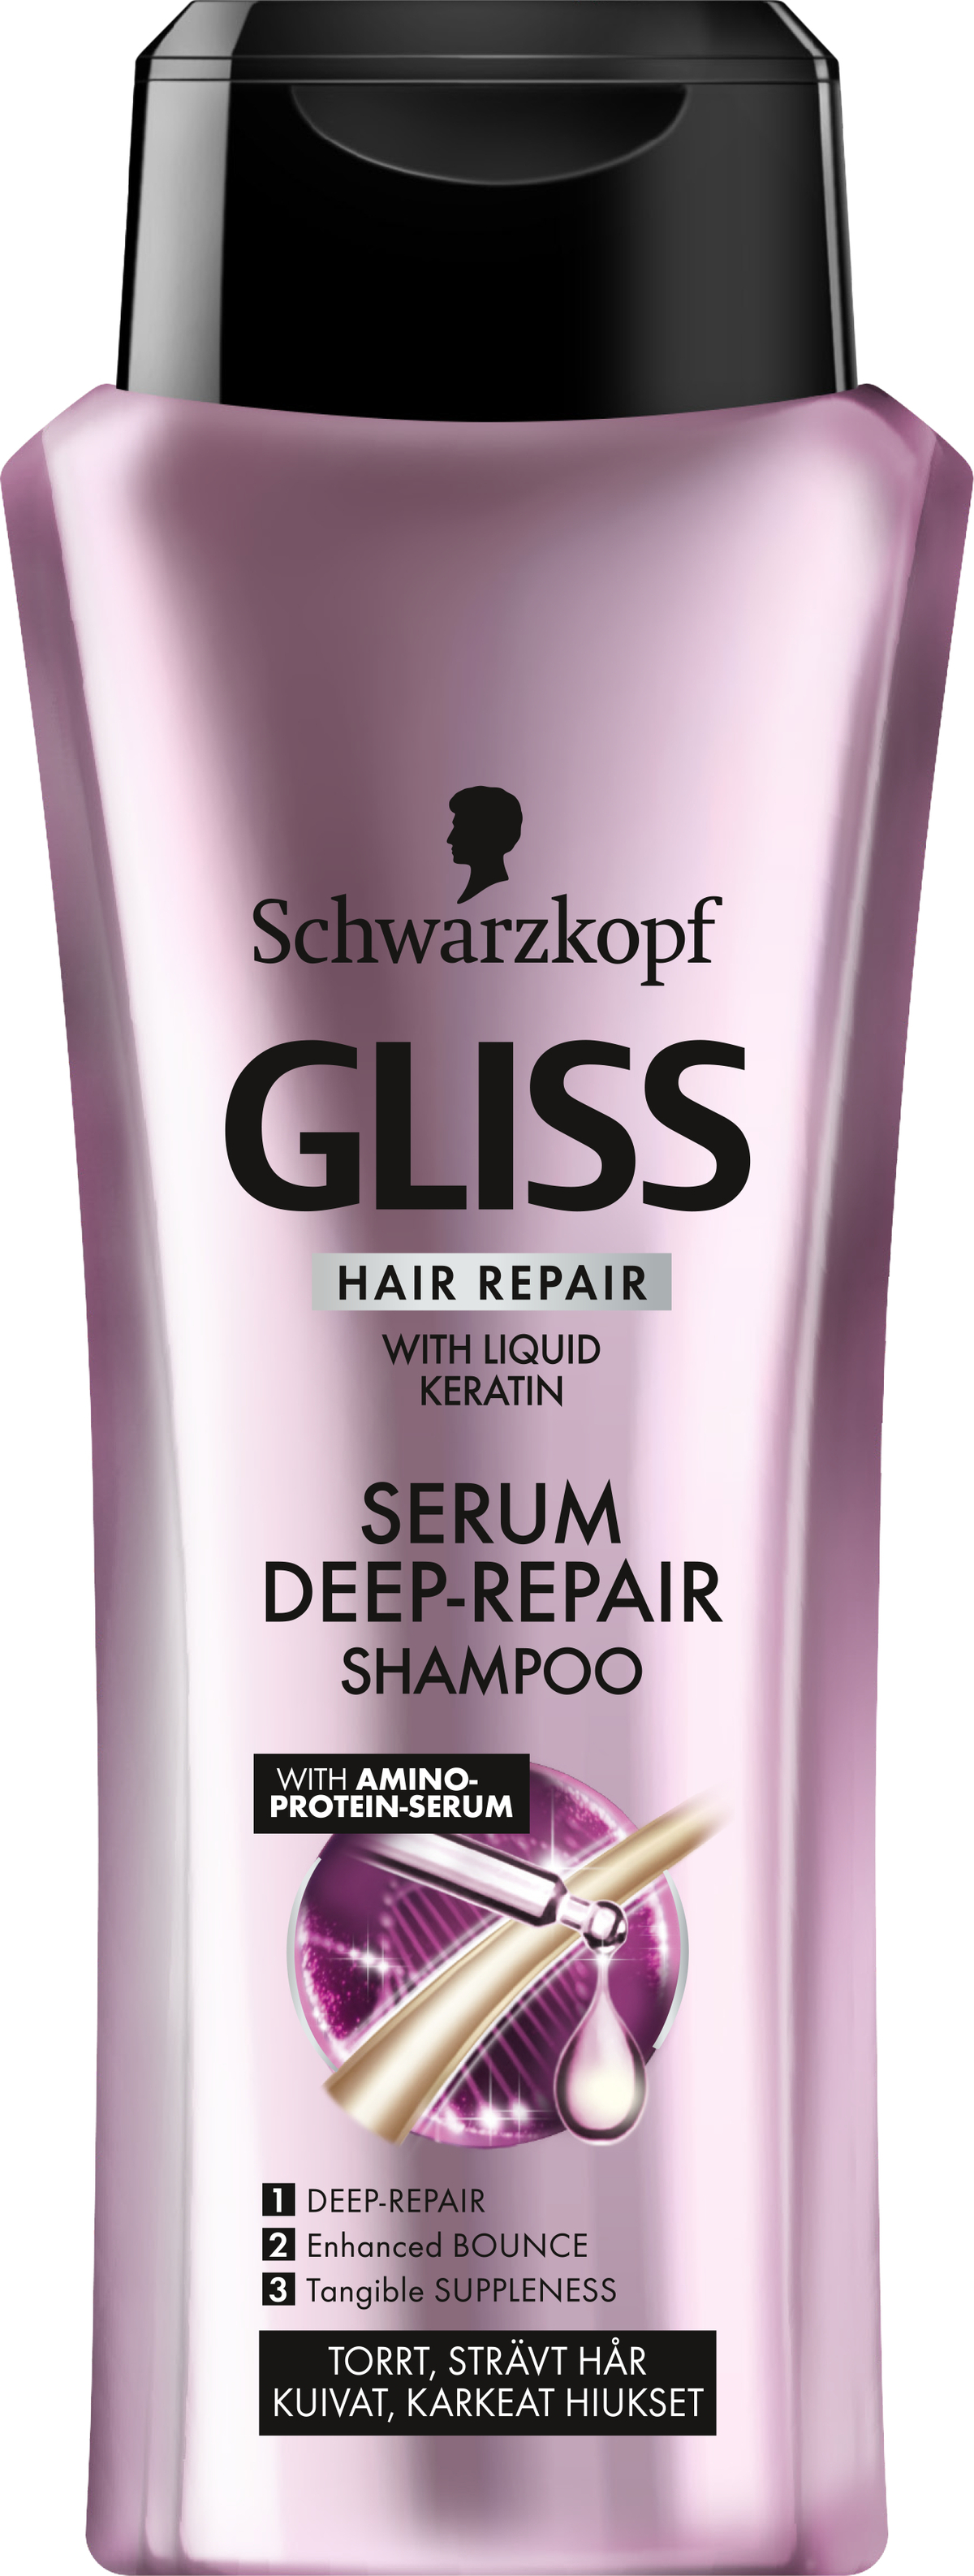 Schwarzkopf Gliss Serum Repair Shampoo 250ml